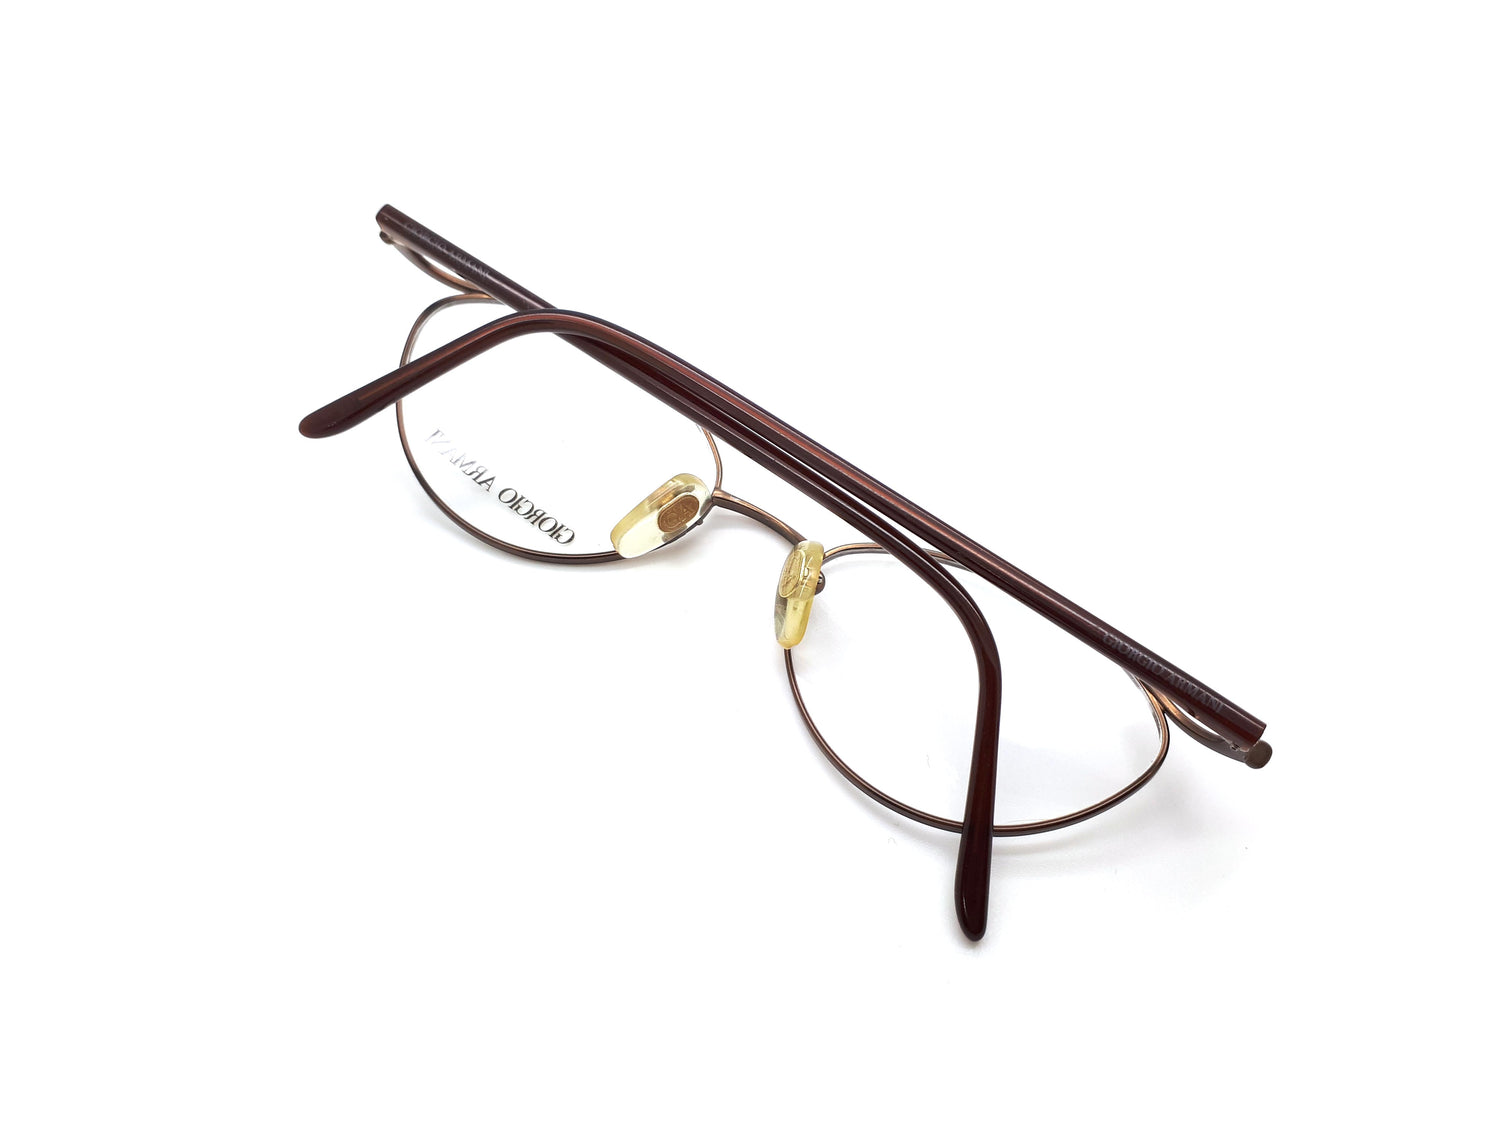 Giorgio Armani 1010 1128 Vintage 90s Glasses Frames – Ed & Sarna Vintage  Eyewear